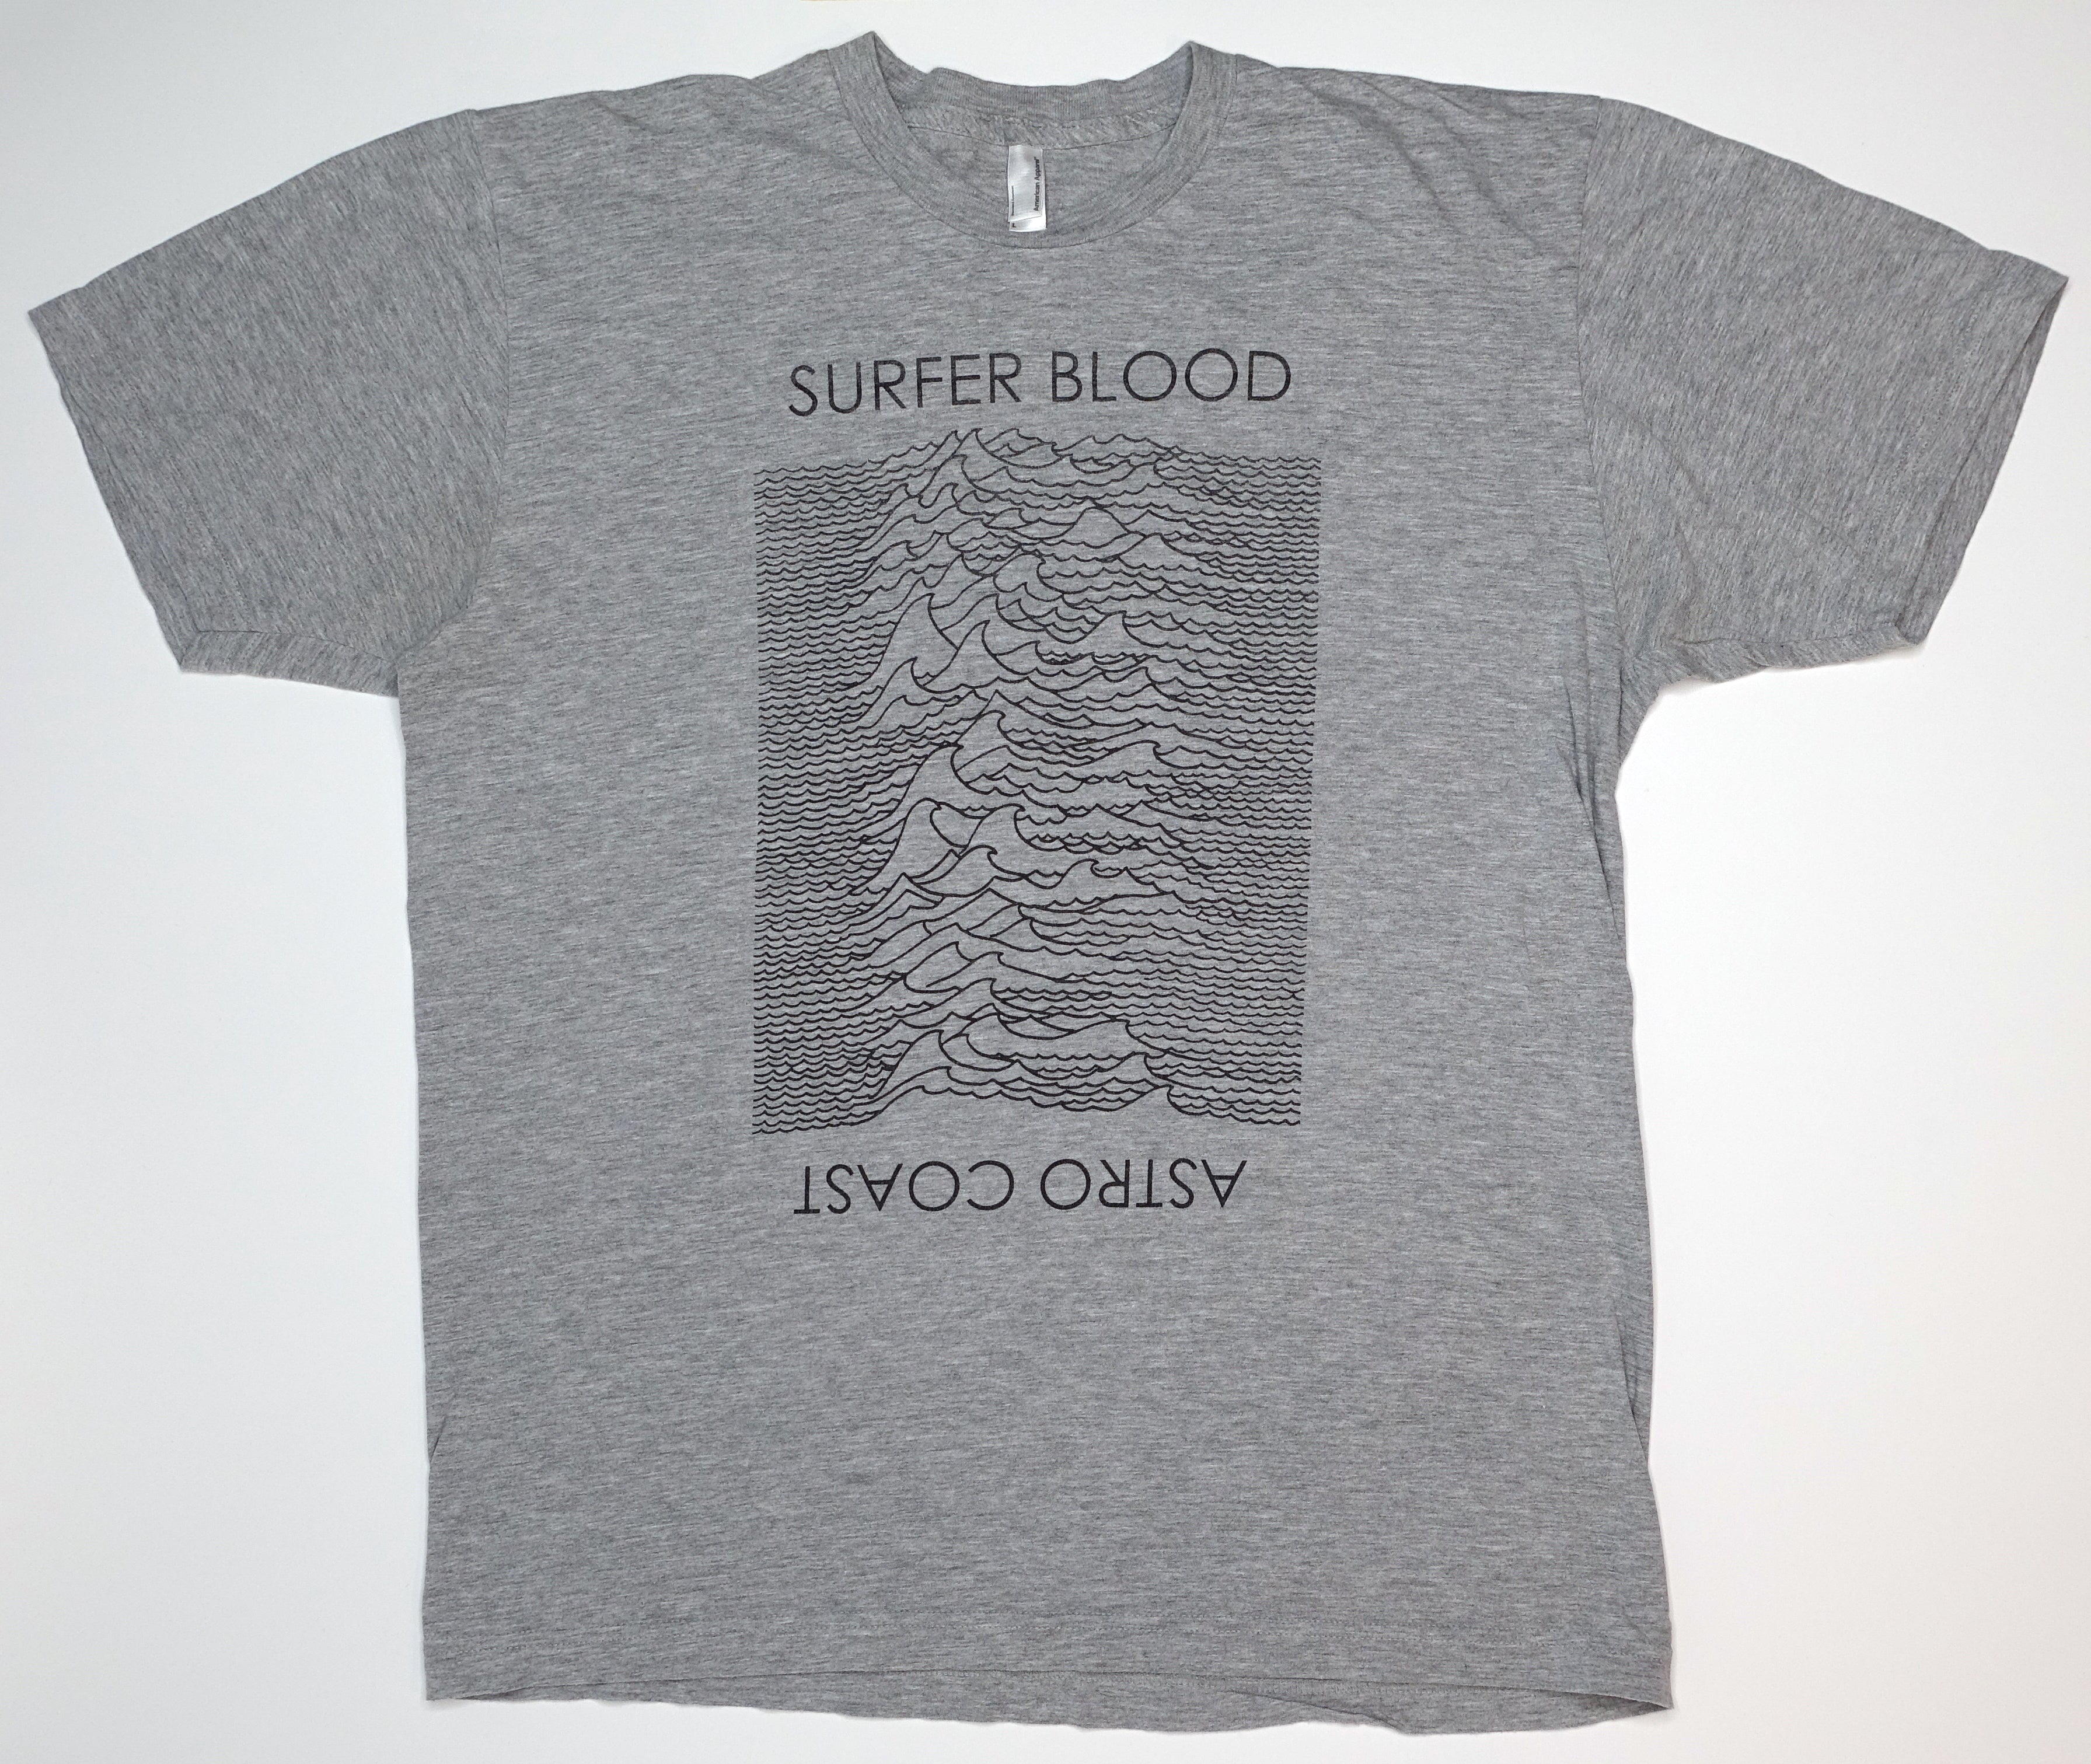 Surfer Blood - Astro Coast 2009 Tour Shirt Size Large